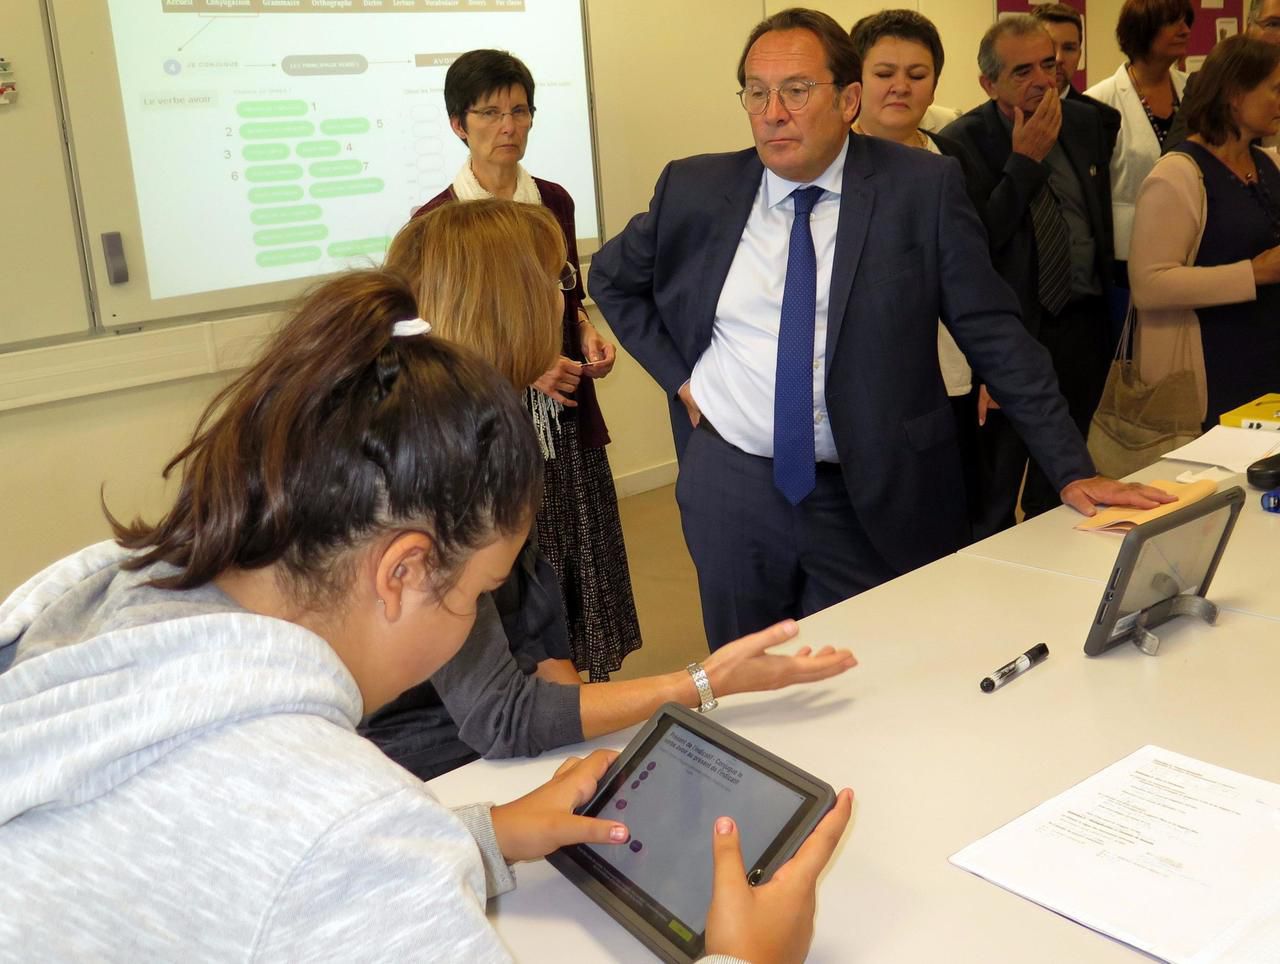 <b></b> Meulan. Pierre Bédier, le président LR du conseil départemental, s’est rendu au collège Henri IV dans le cadre de la distribution de tablettes numériques aux élèves. 